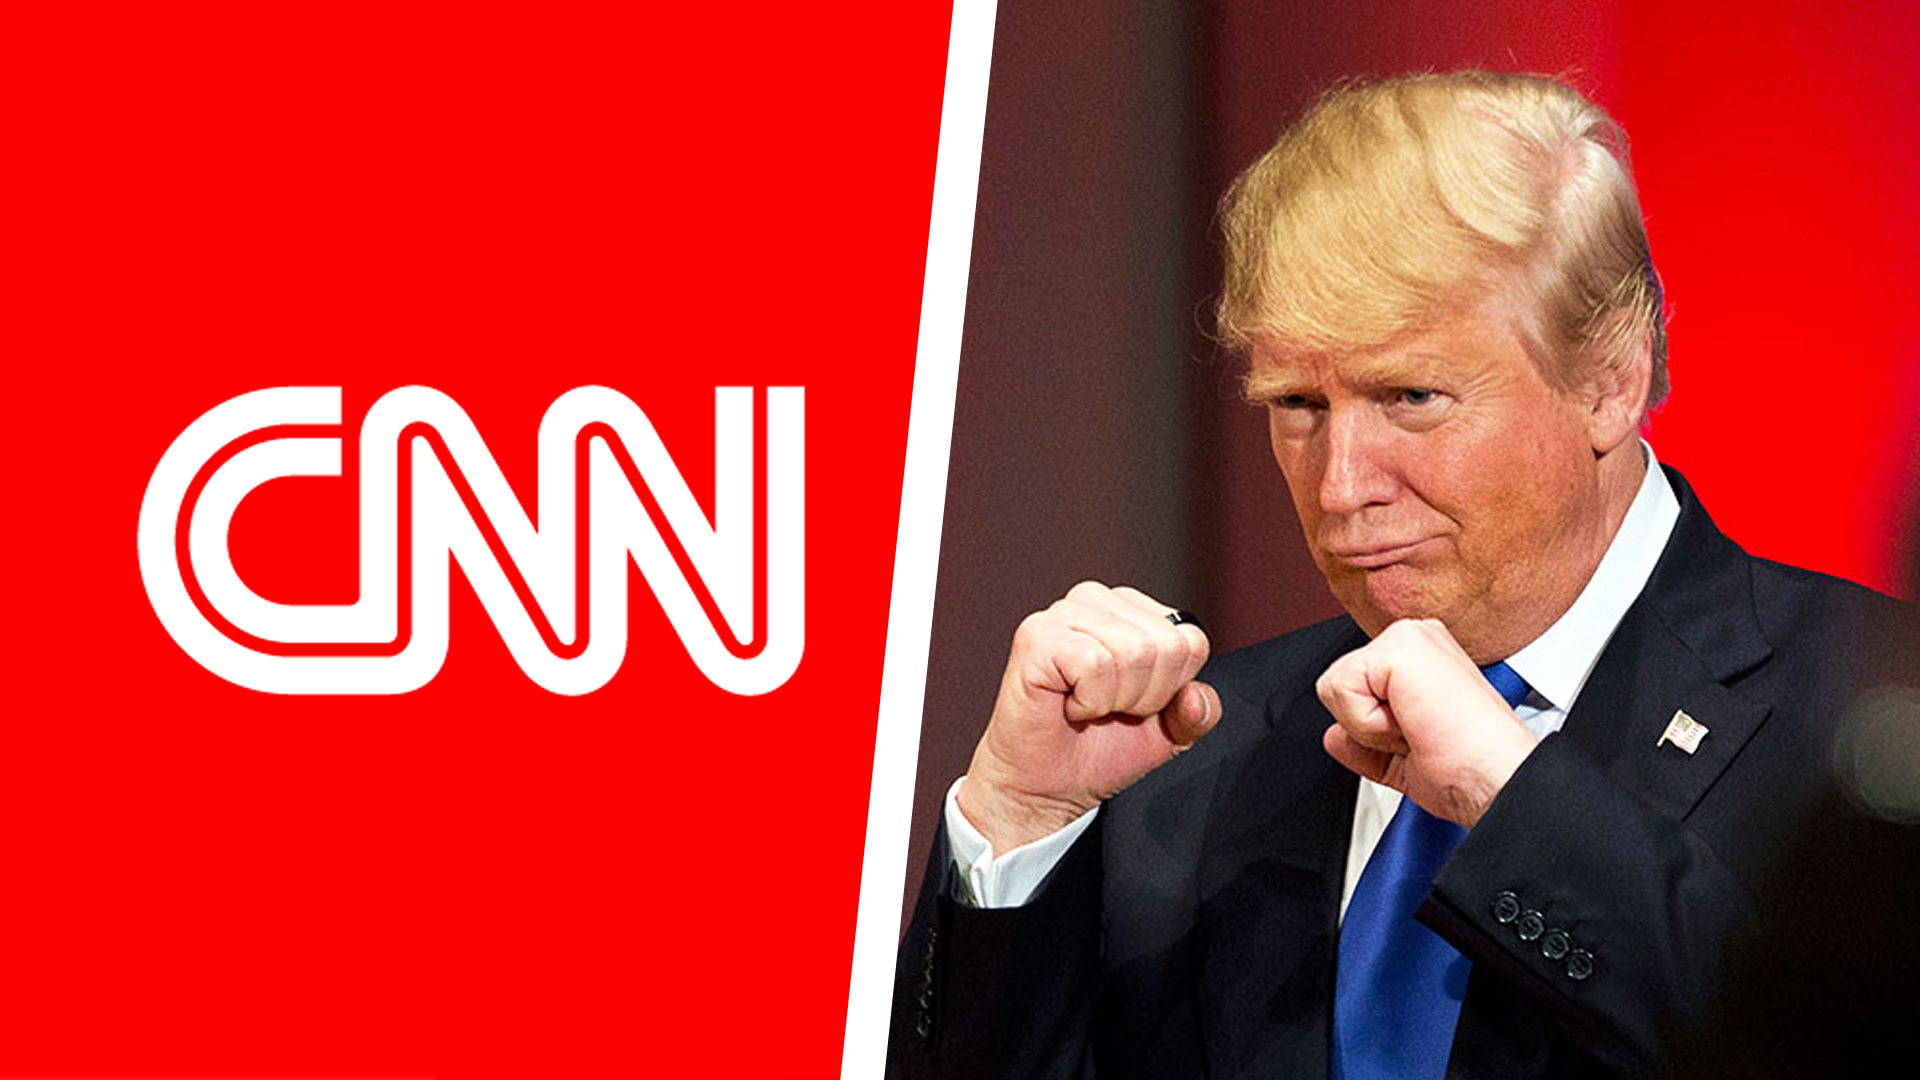 CNN: Сенат принял решение о санкциях против России вопреки позиции Трампа